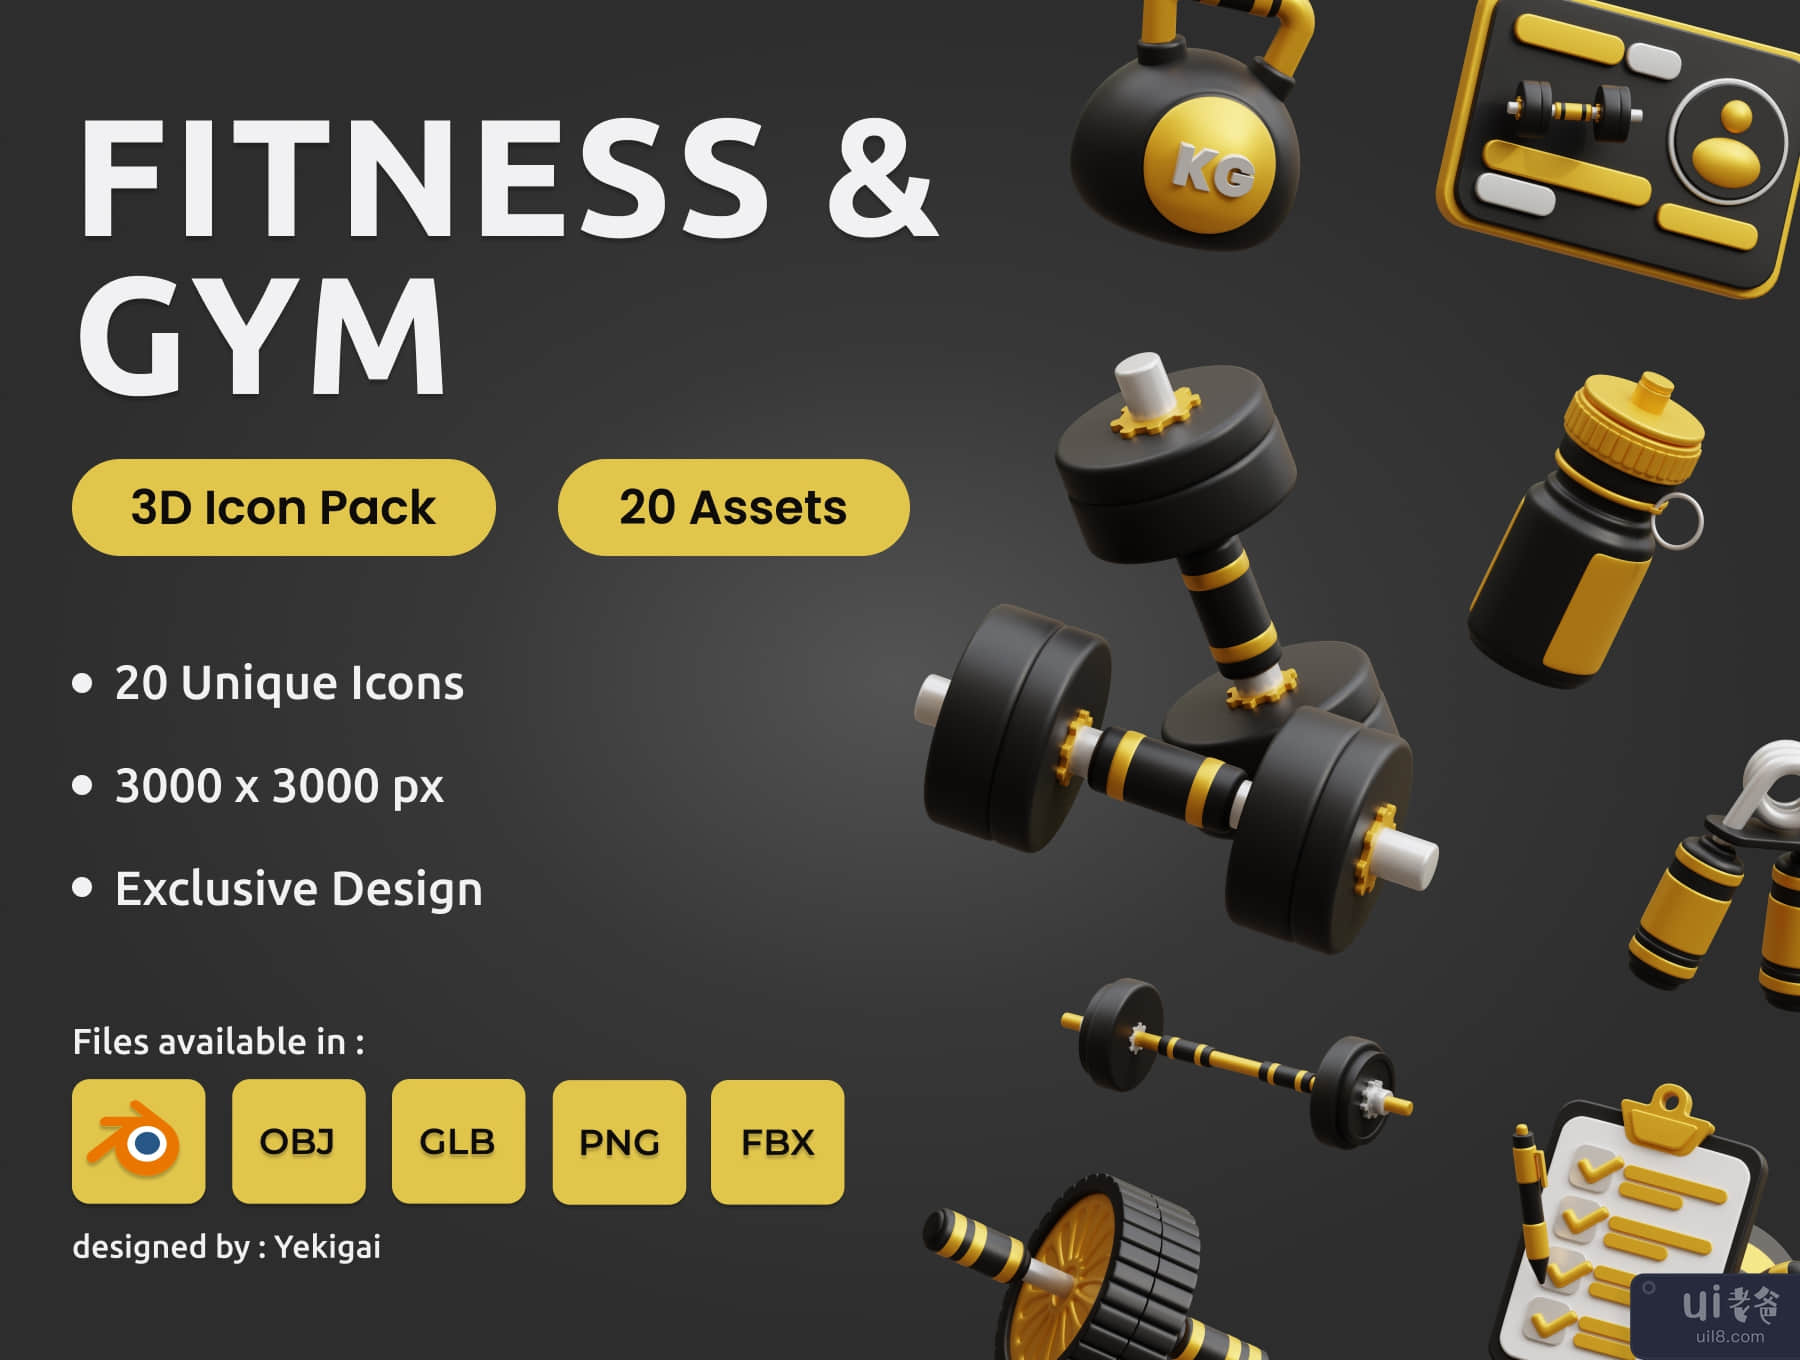 健身房 3D 图标包 (Fitness and Gym 3D Icon Pack)插图5